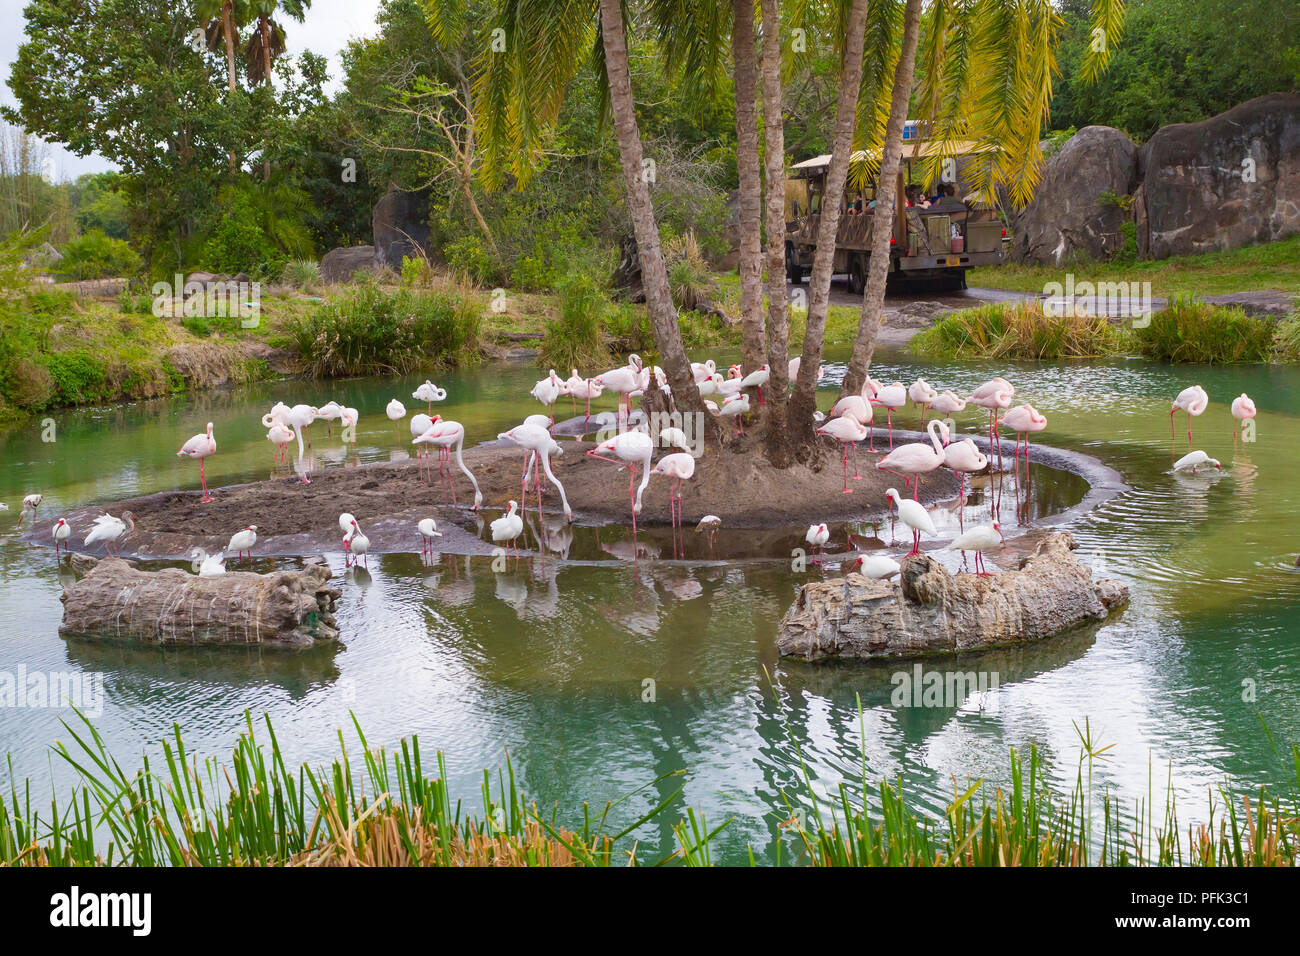 Kilimanjaro Safari ride en Disneys Animal Kingdom Theme Park, Walt Disney World, Orlando, Florida. Foto de stock